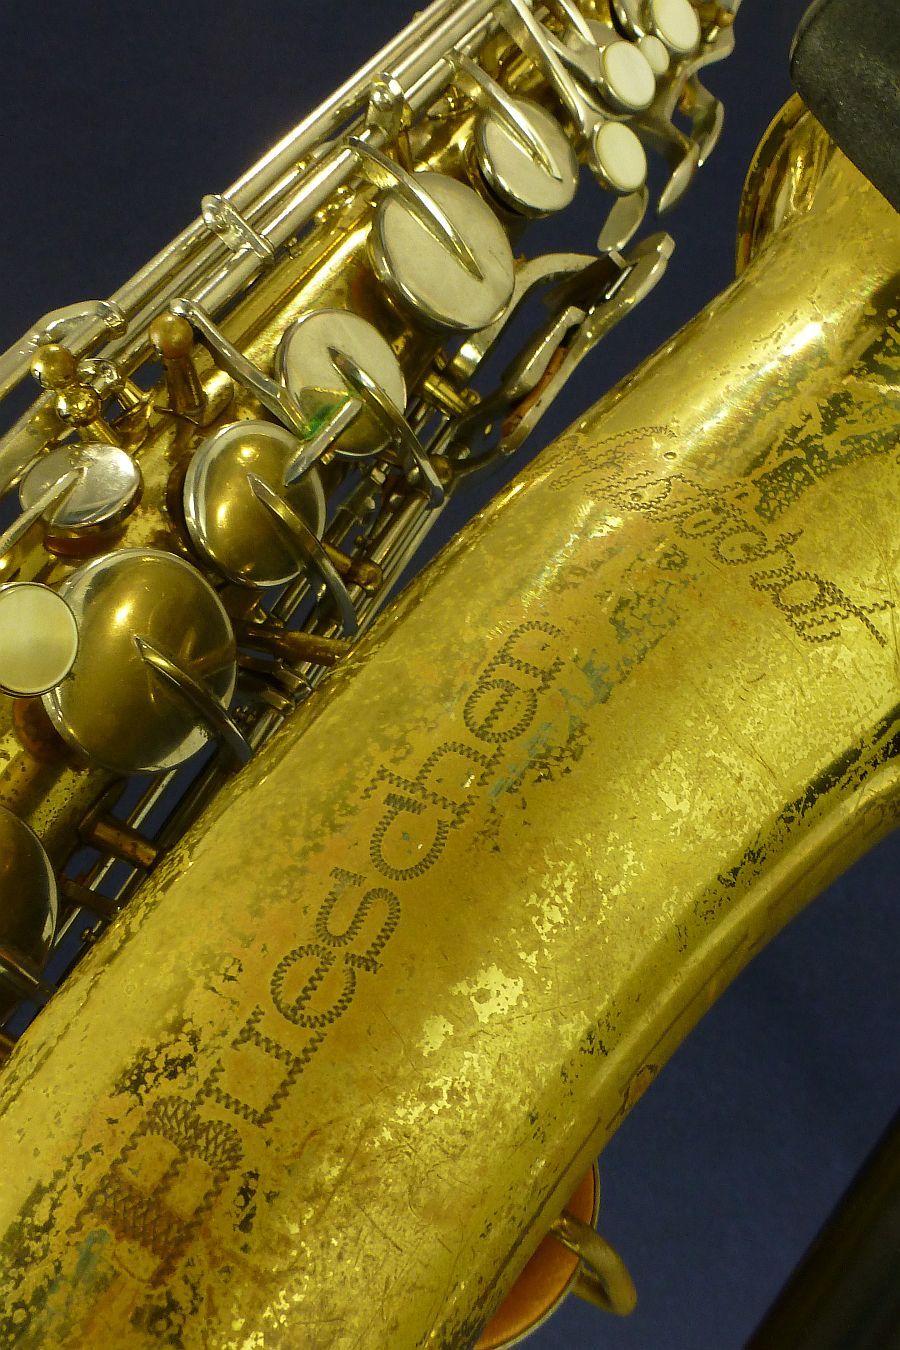 buescher aristocrat clarinet serial numbers